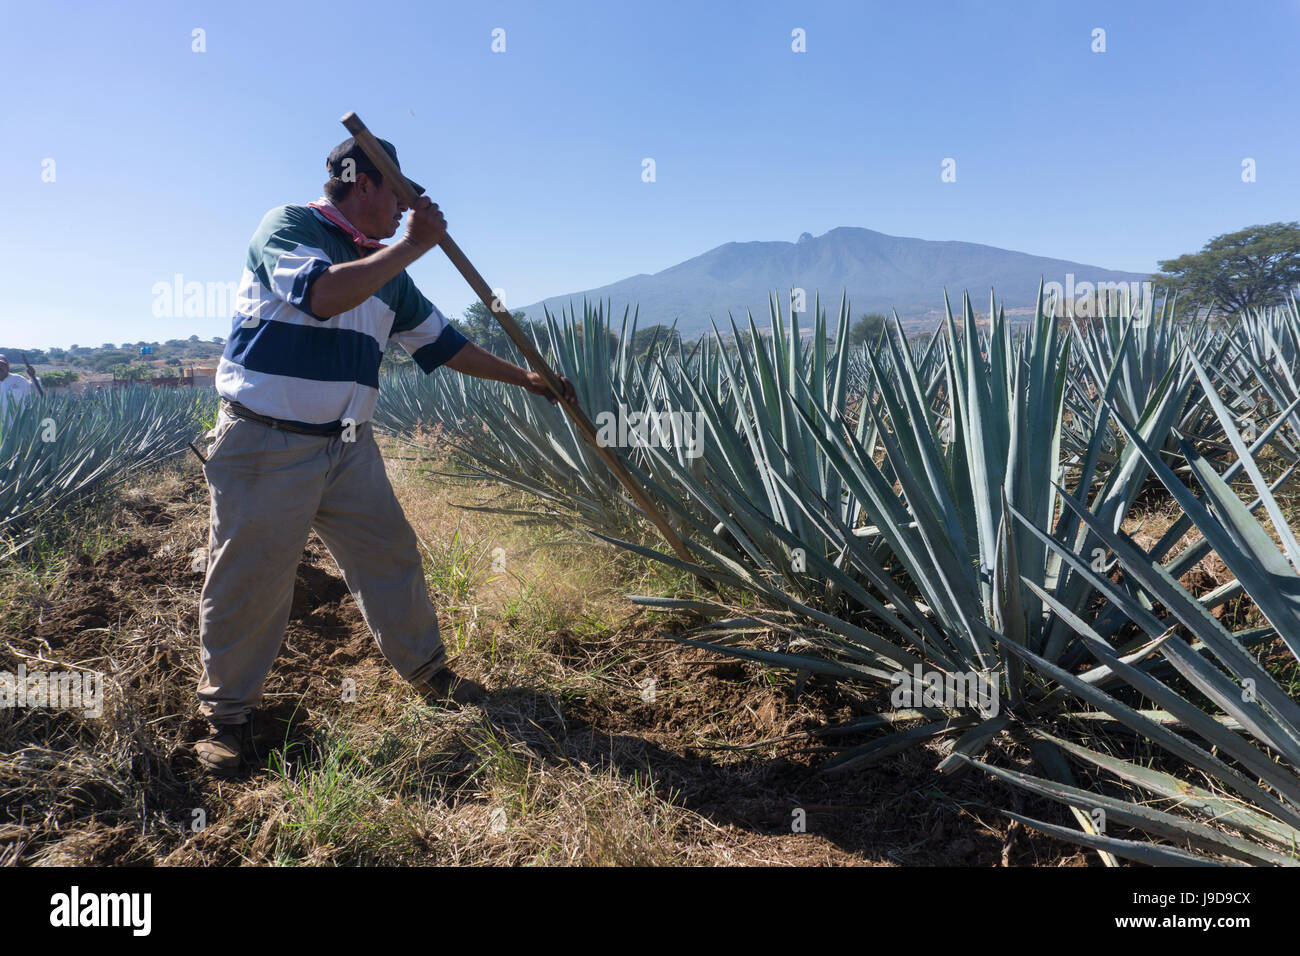 El tequila es hecho de la planta de agave azul en el estado de Jalisco y principalmente en los alrededores de la ciudad de Tequila, Jalisco, México Foto de stock